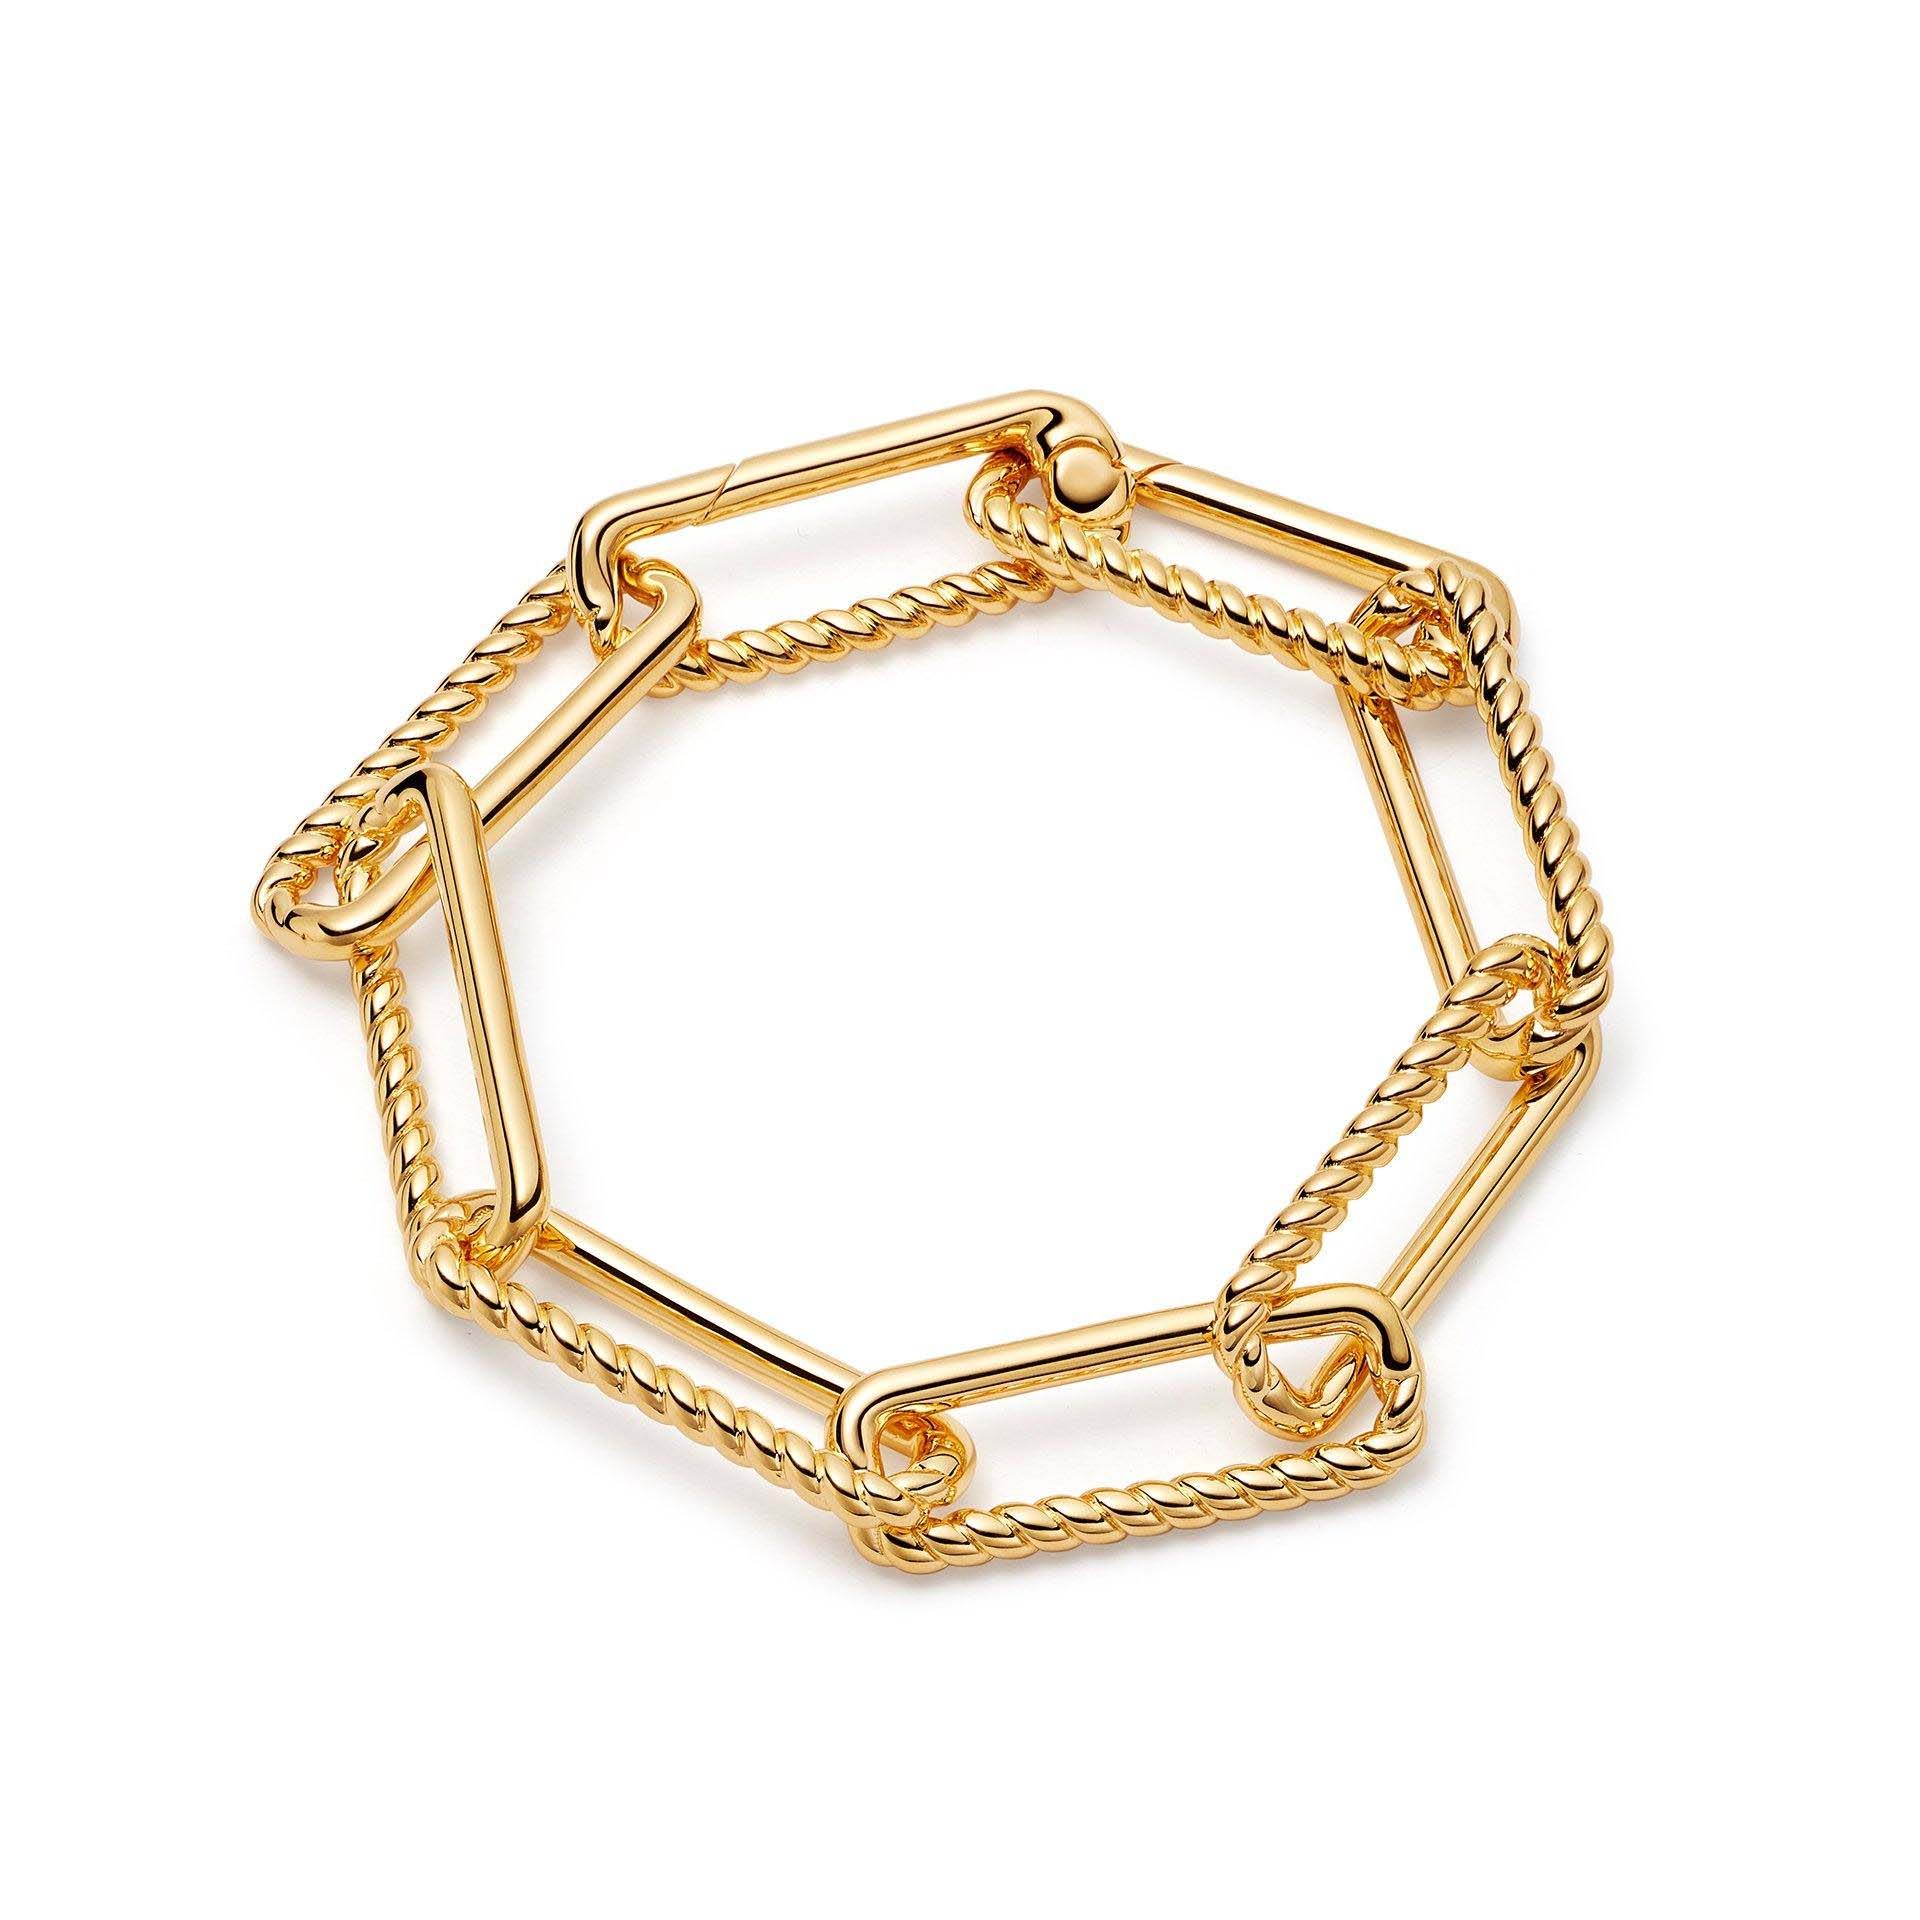 الجملة تصميم مخصص 18ct سلسلة مطلية بالذهب سوار مجوهرات OEM / ODM على مصنع المجوهرات الفضية النحاسية OEM